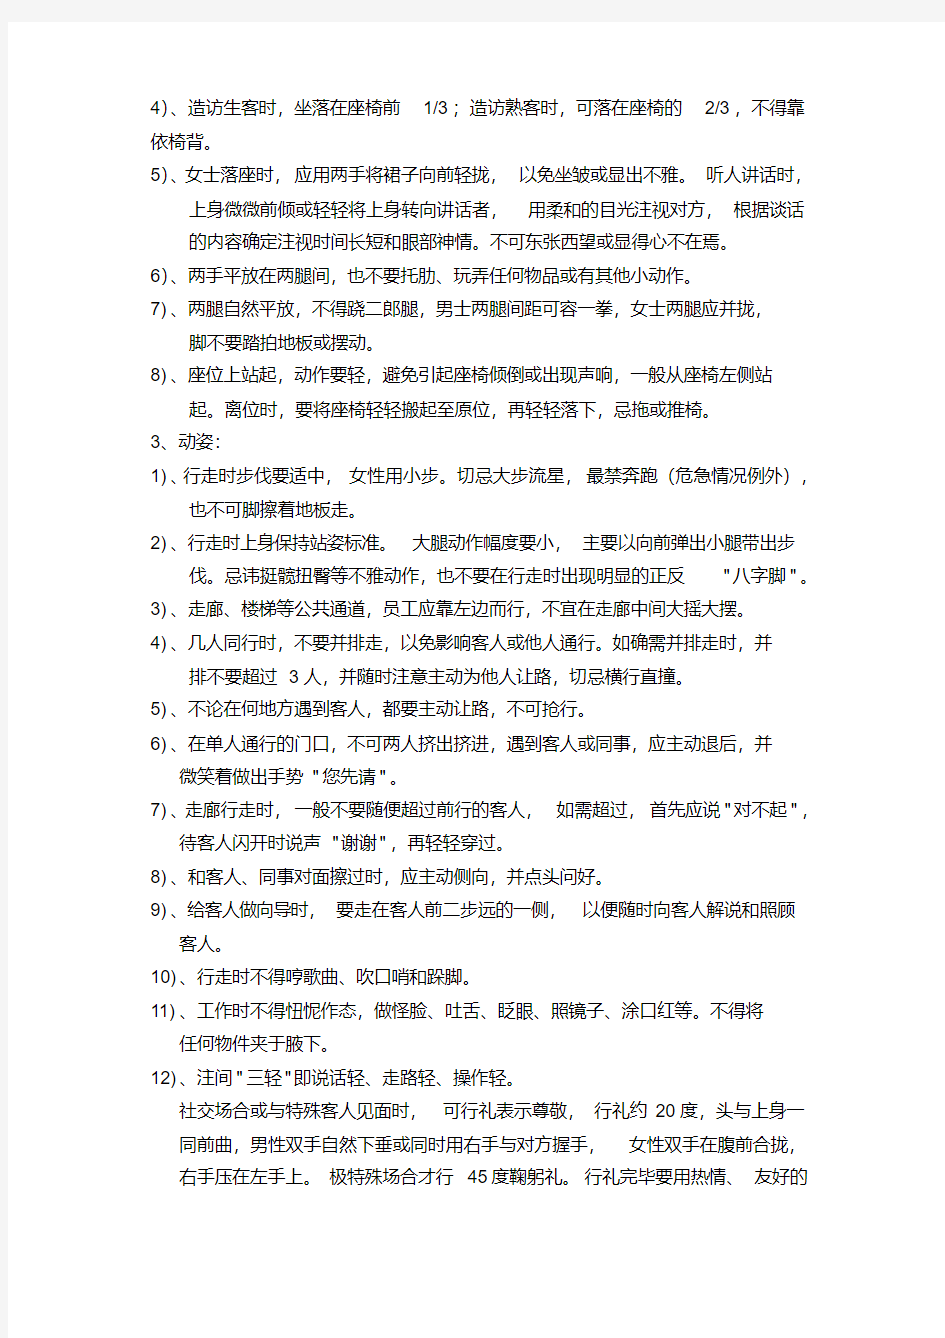 招商部管理制度.pdf